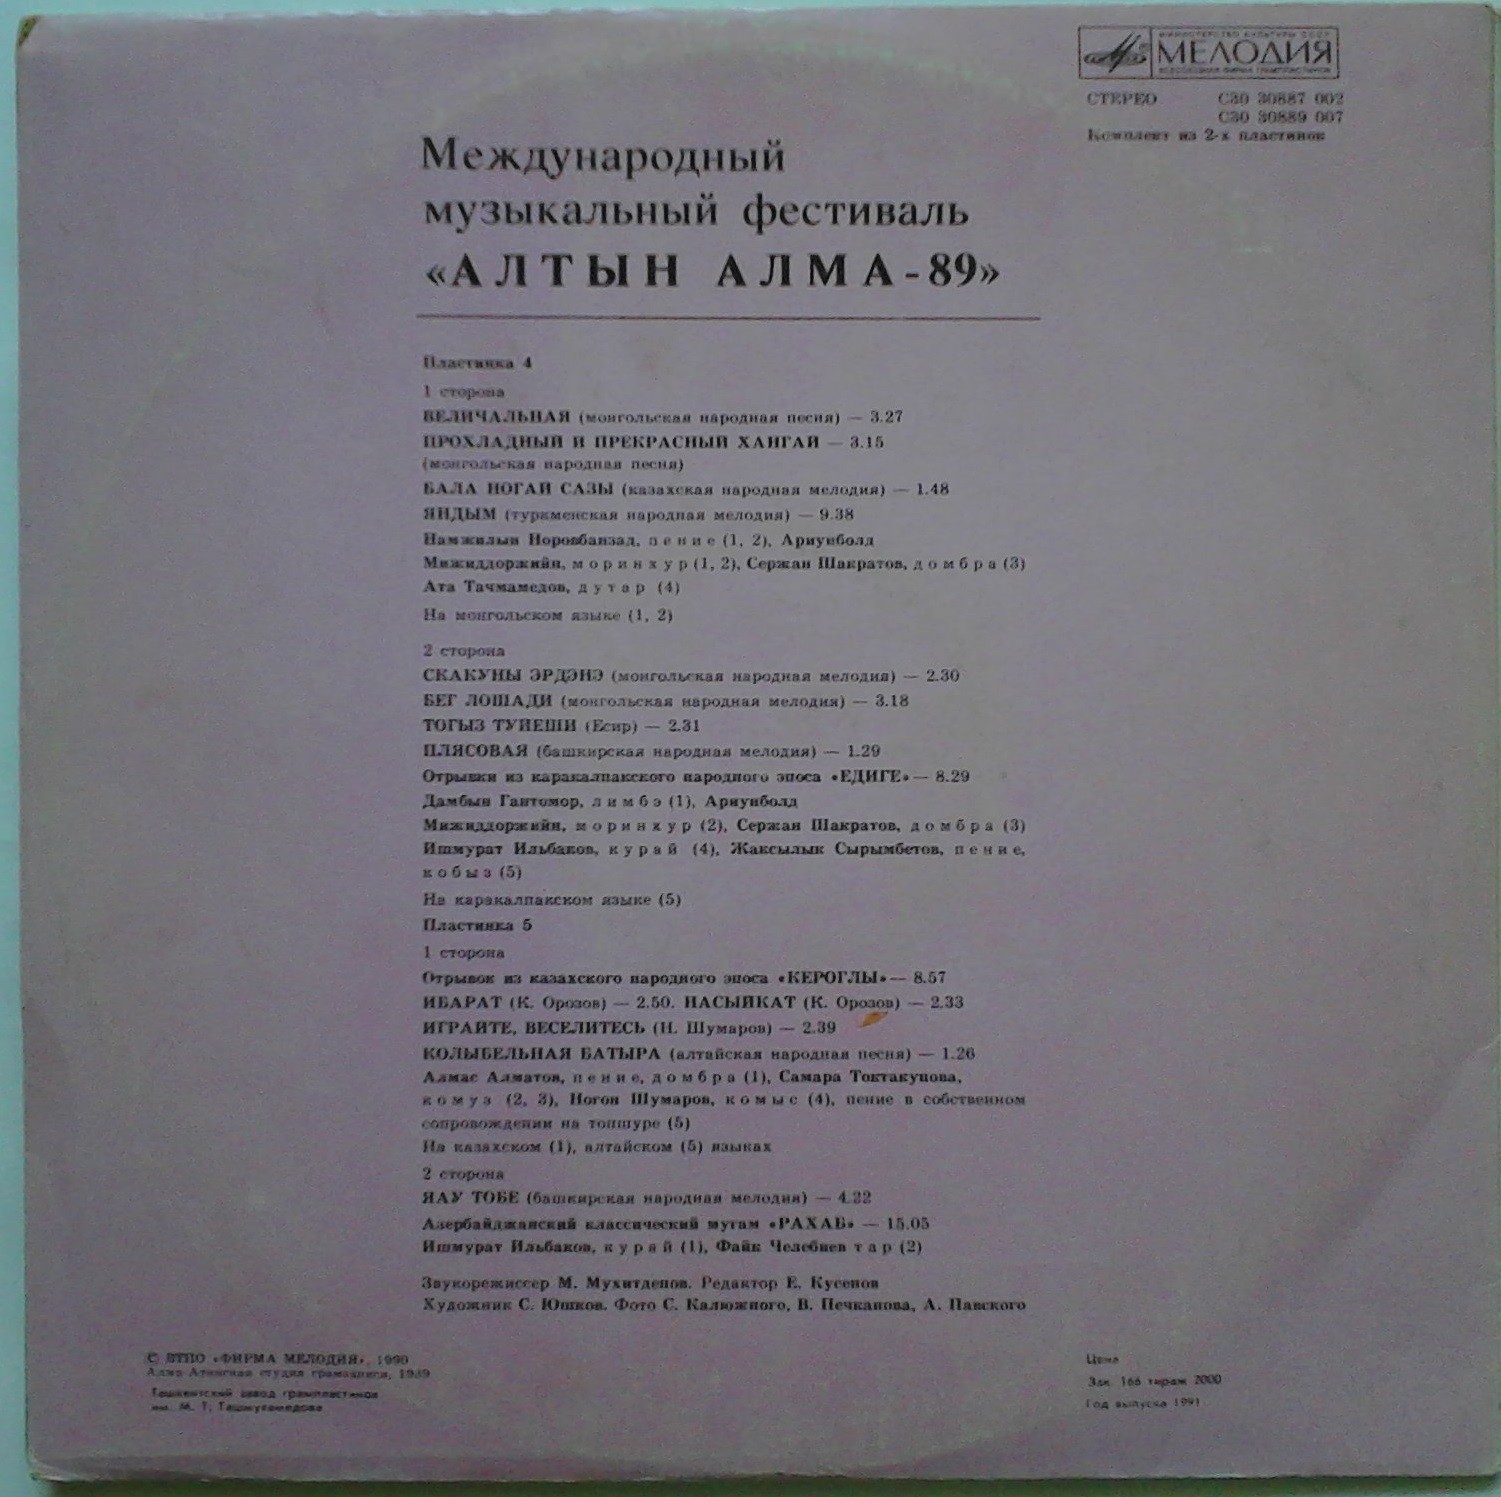 МЕЖДУНАРОДНЫЙ МУЗЫКАЛЬНЫЙ ФЕСТИВАЛЬ «АЛТЫН АЛМА-89» № 4-5 (2 пластинки).